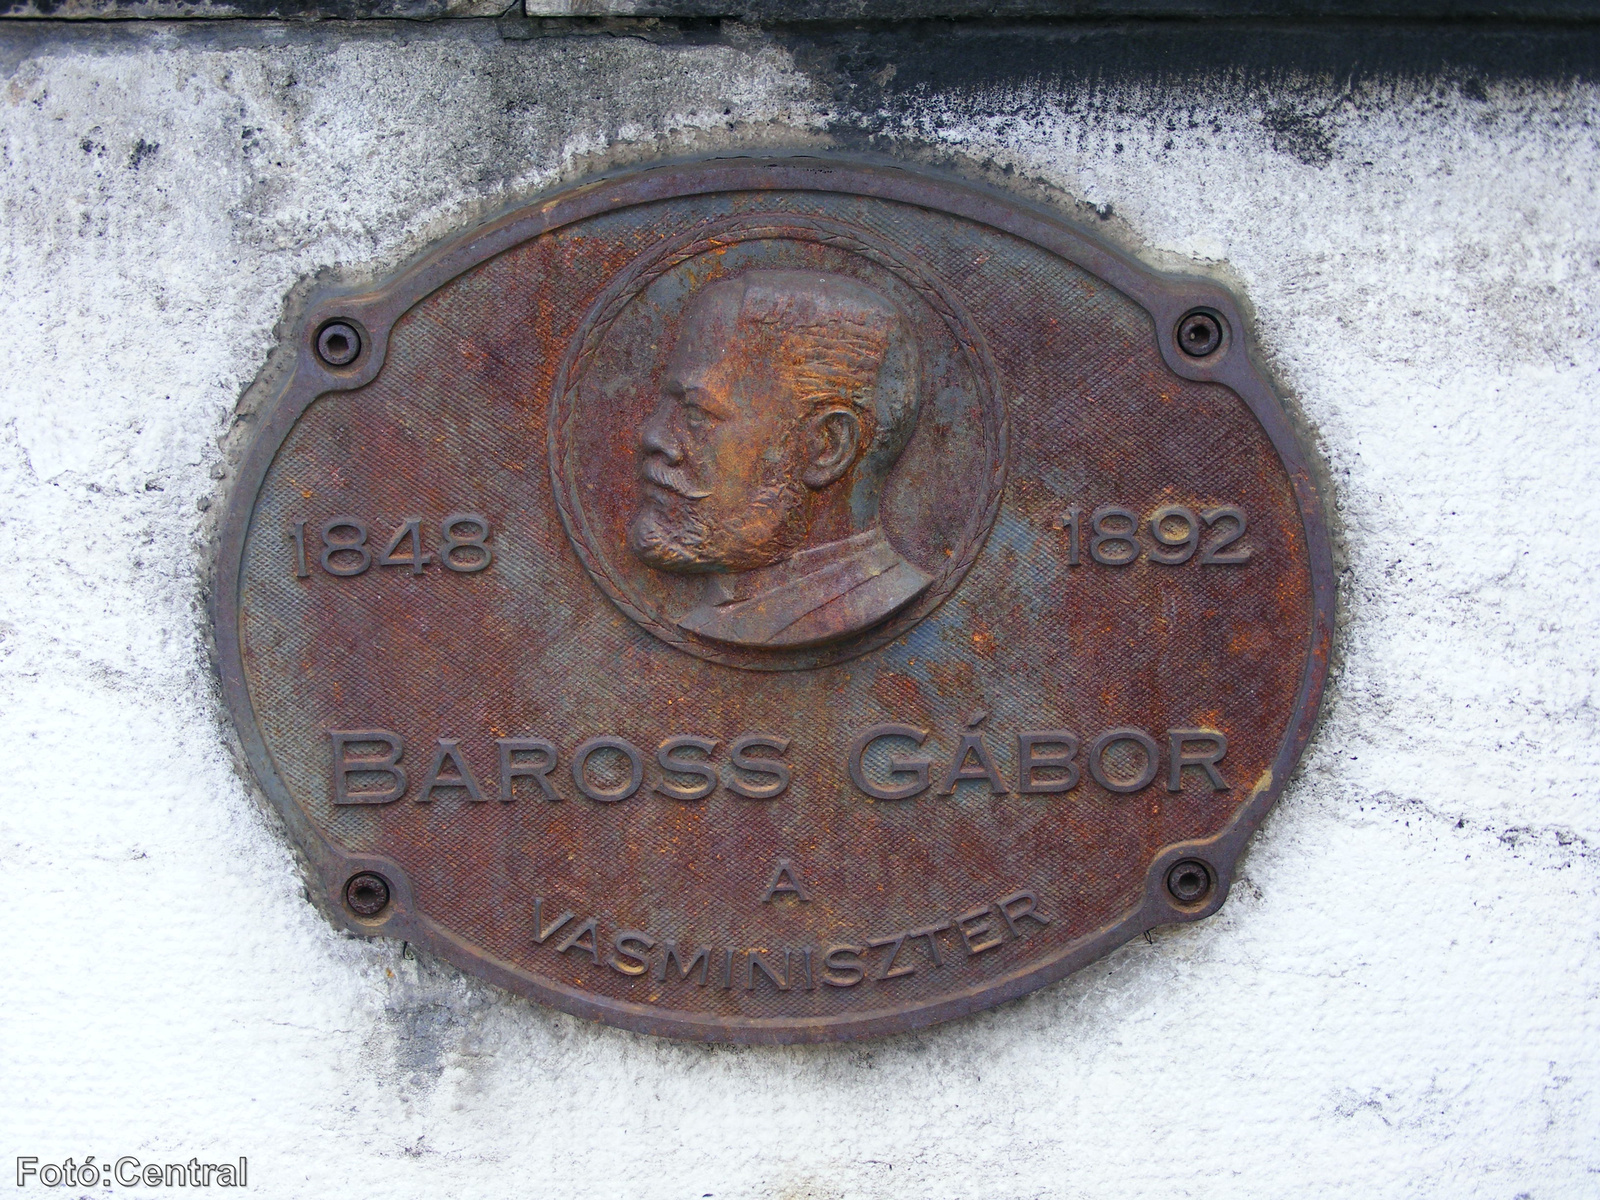 A Baross híd gyalogos feljárójánál lévő Baross Gábor emléktábla.